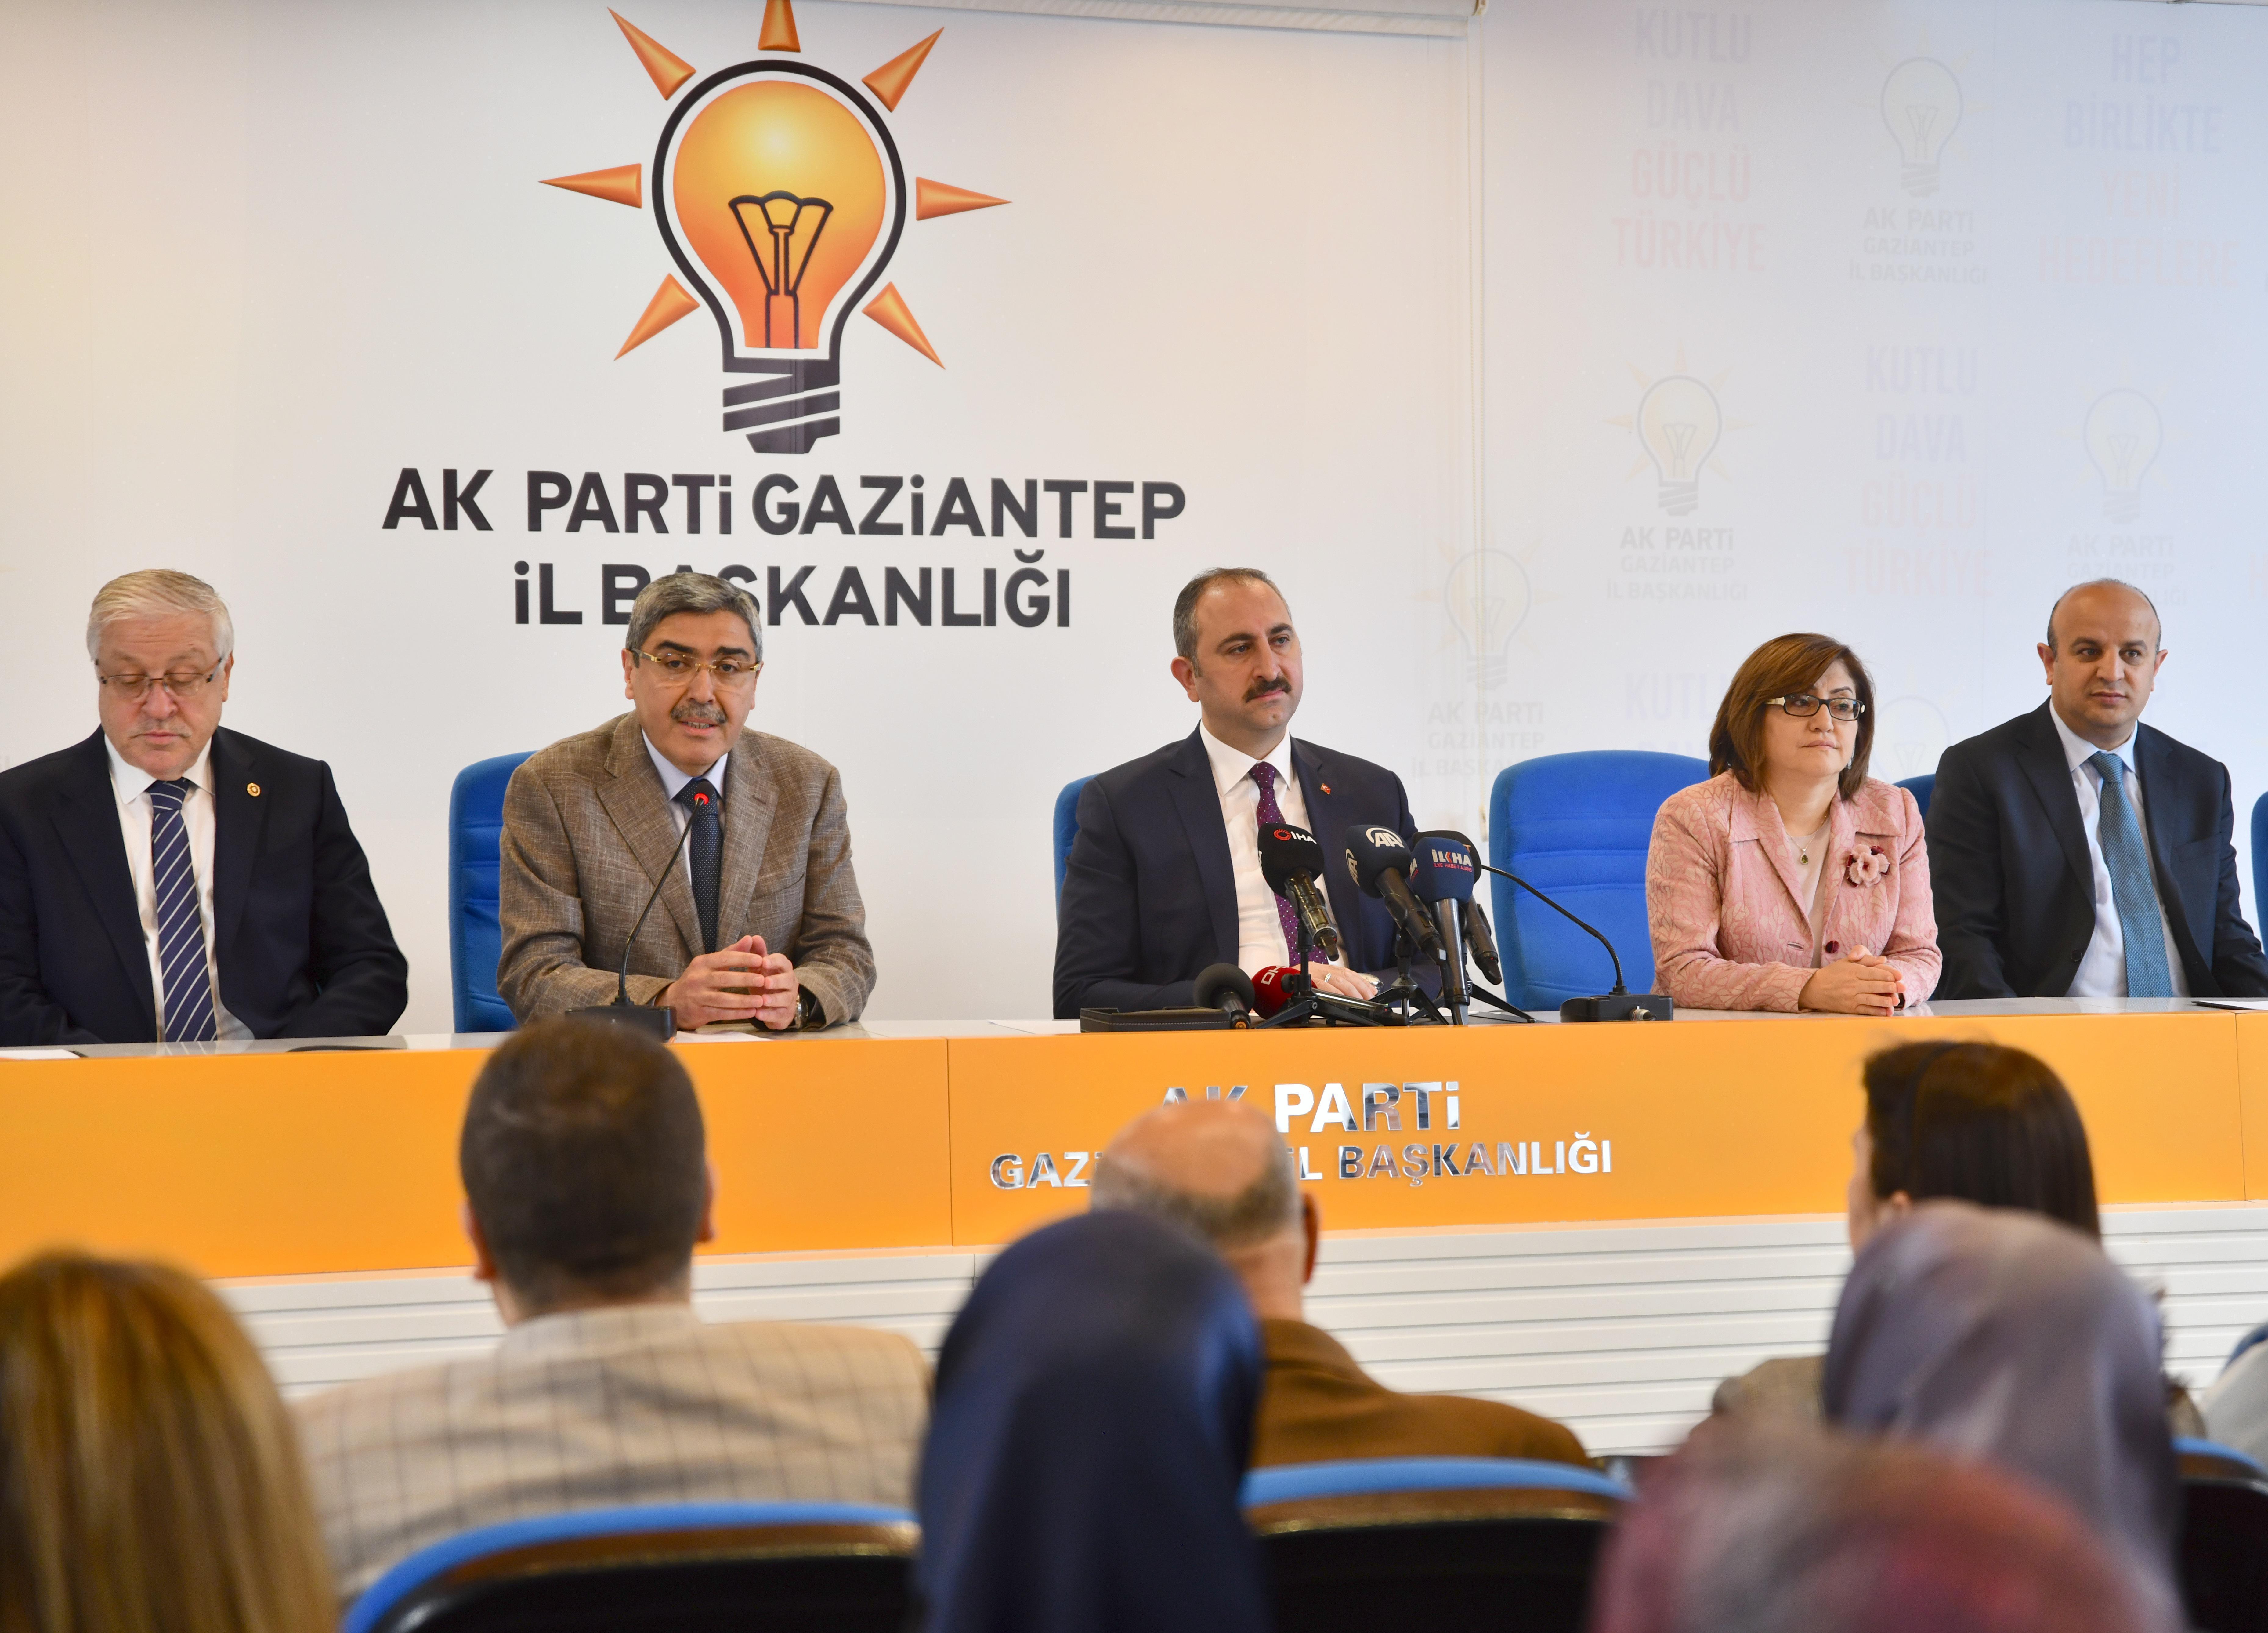 Adalet Bakanı Gül: YSK üyelerini hedef göstermek ahlaki sorumsuzluk örneği